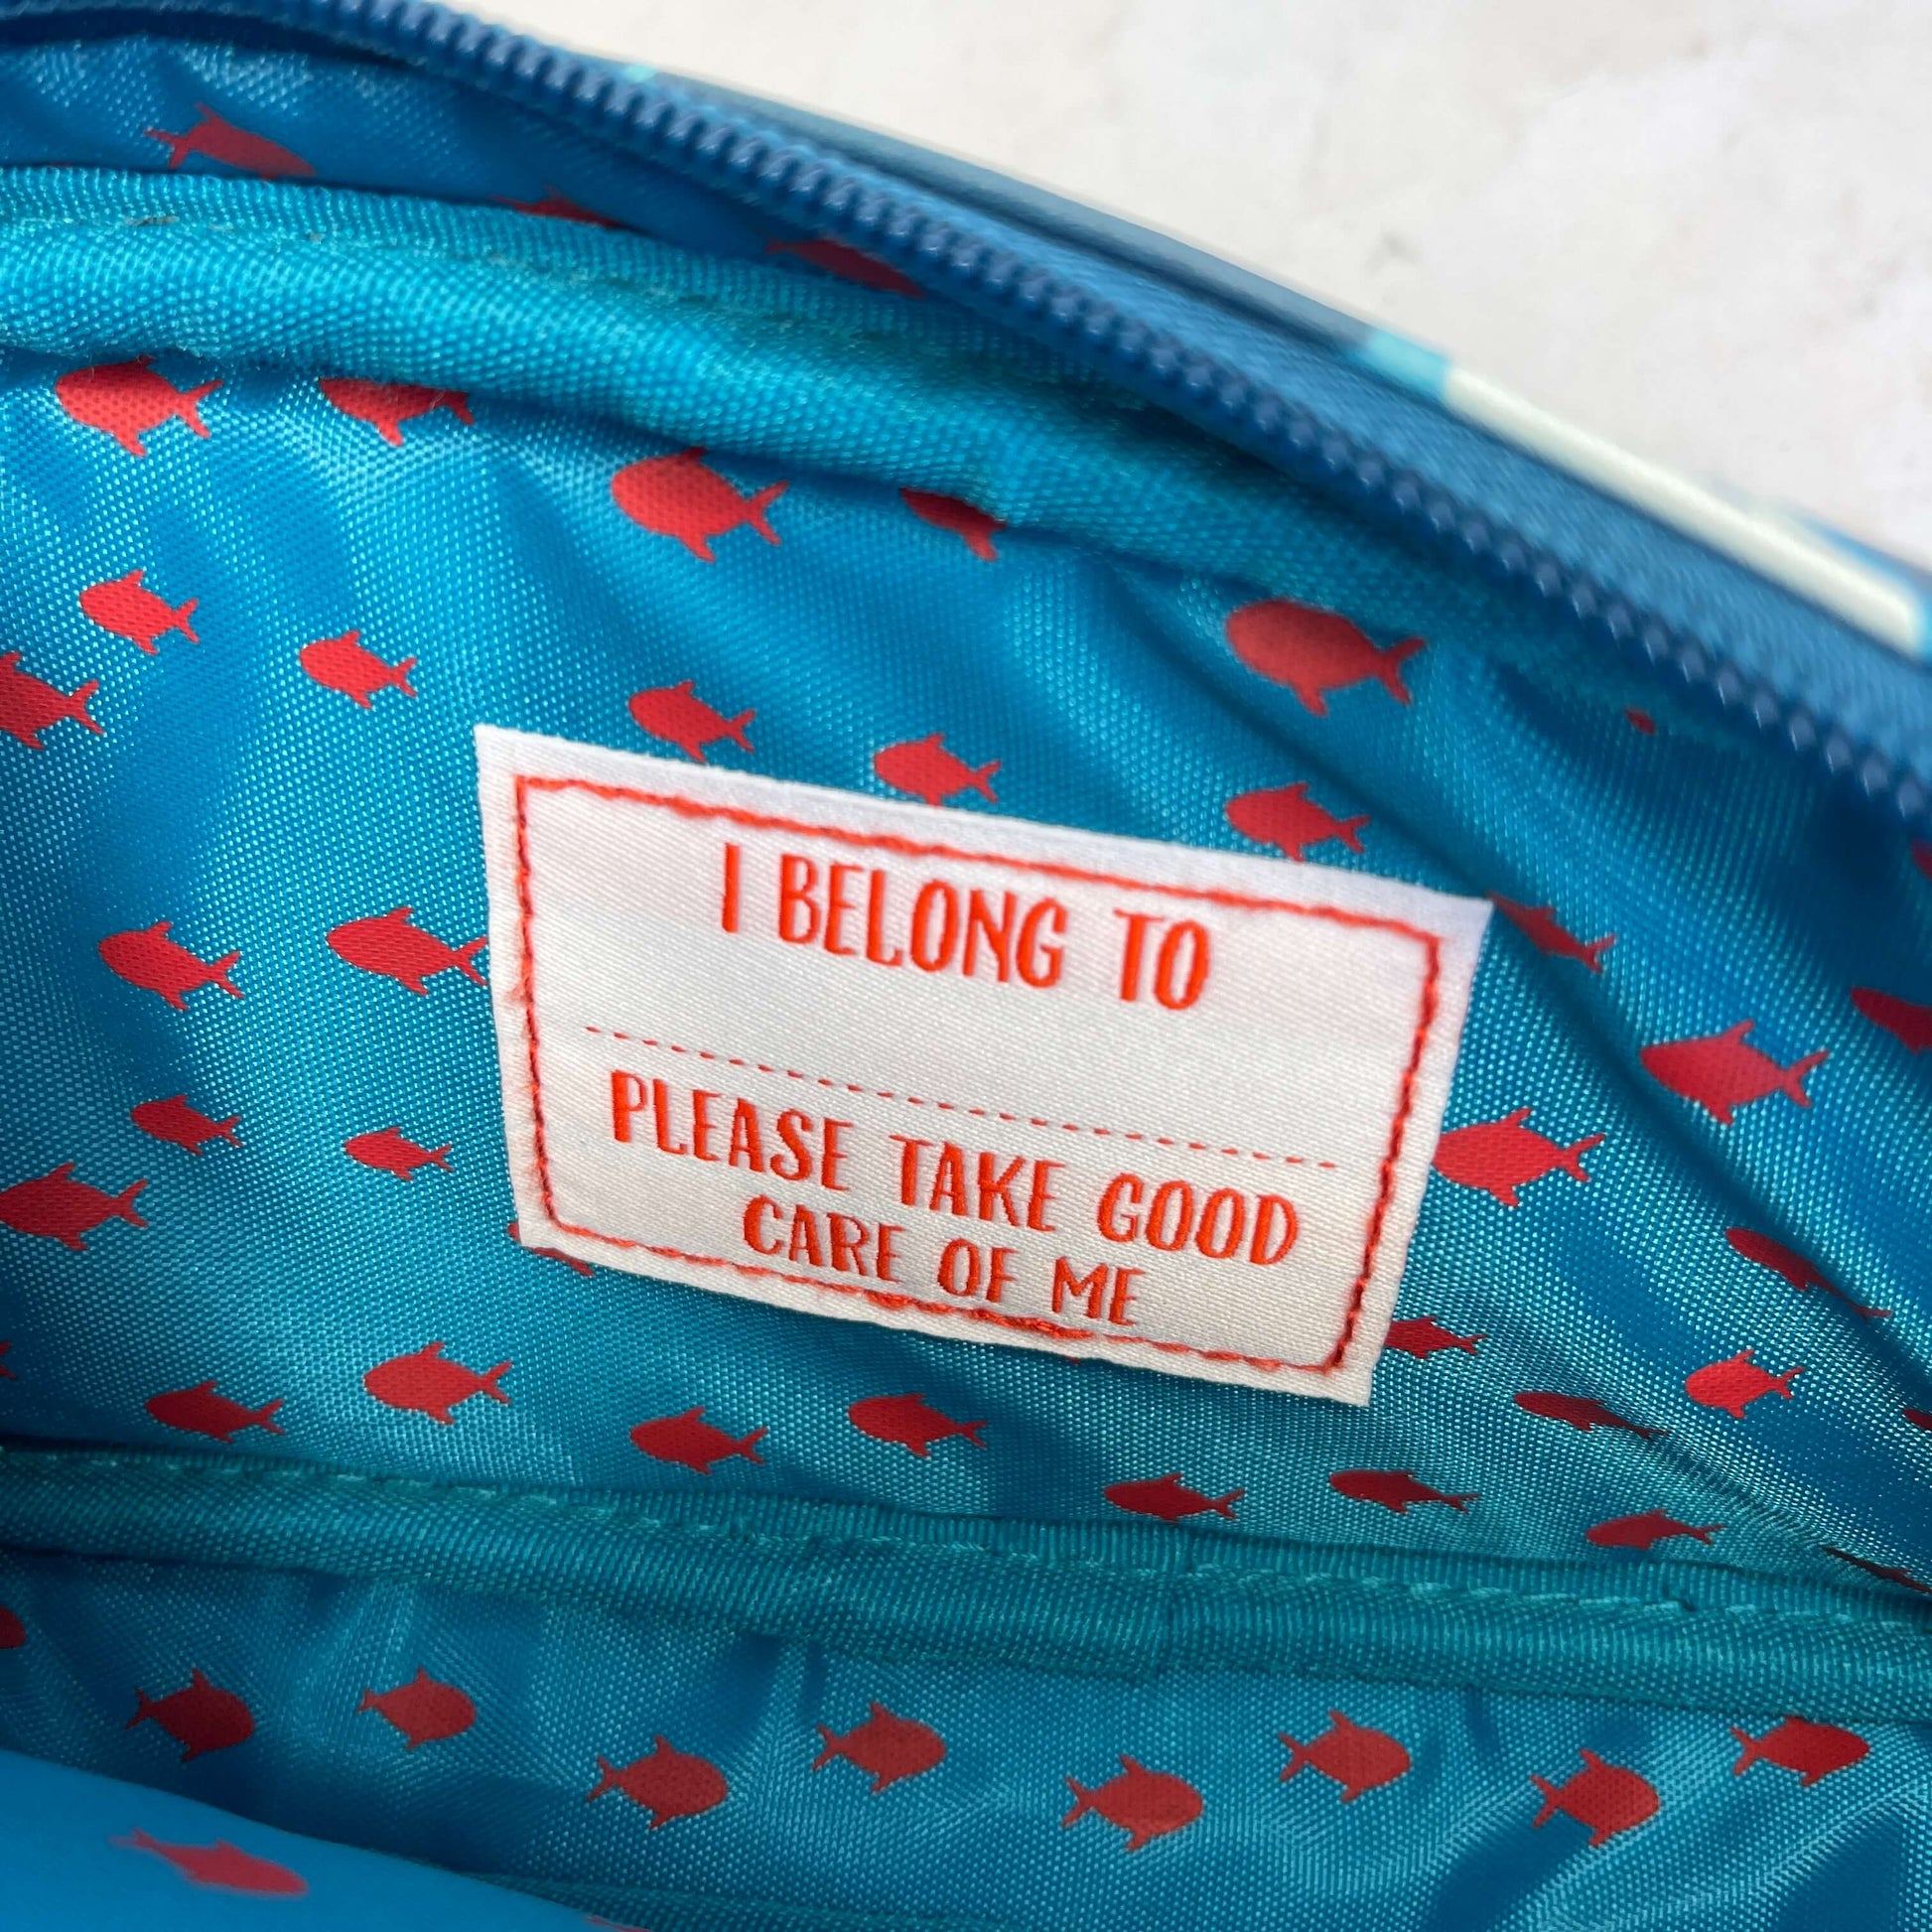 I belong to label sewn inside kids pencil case.